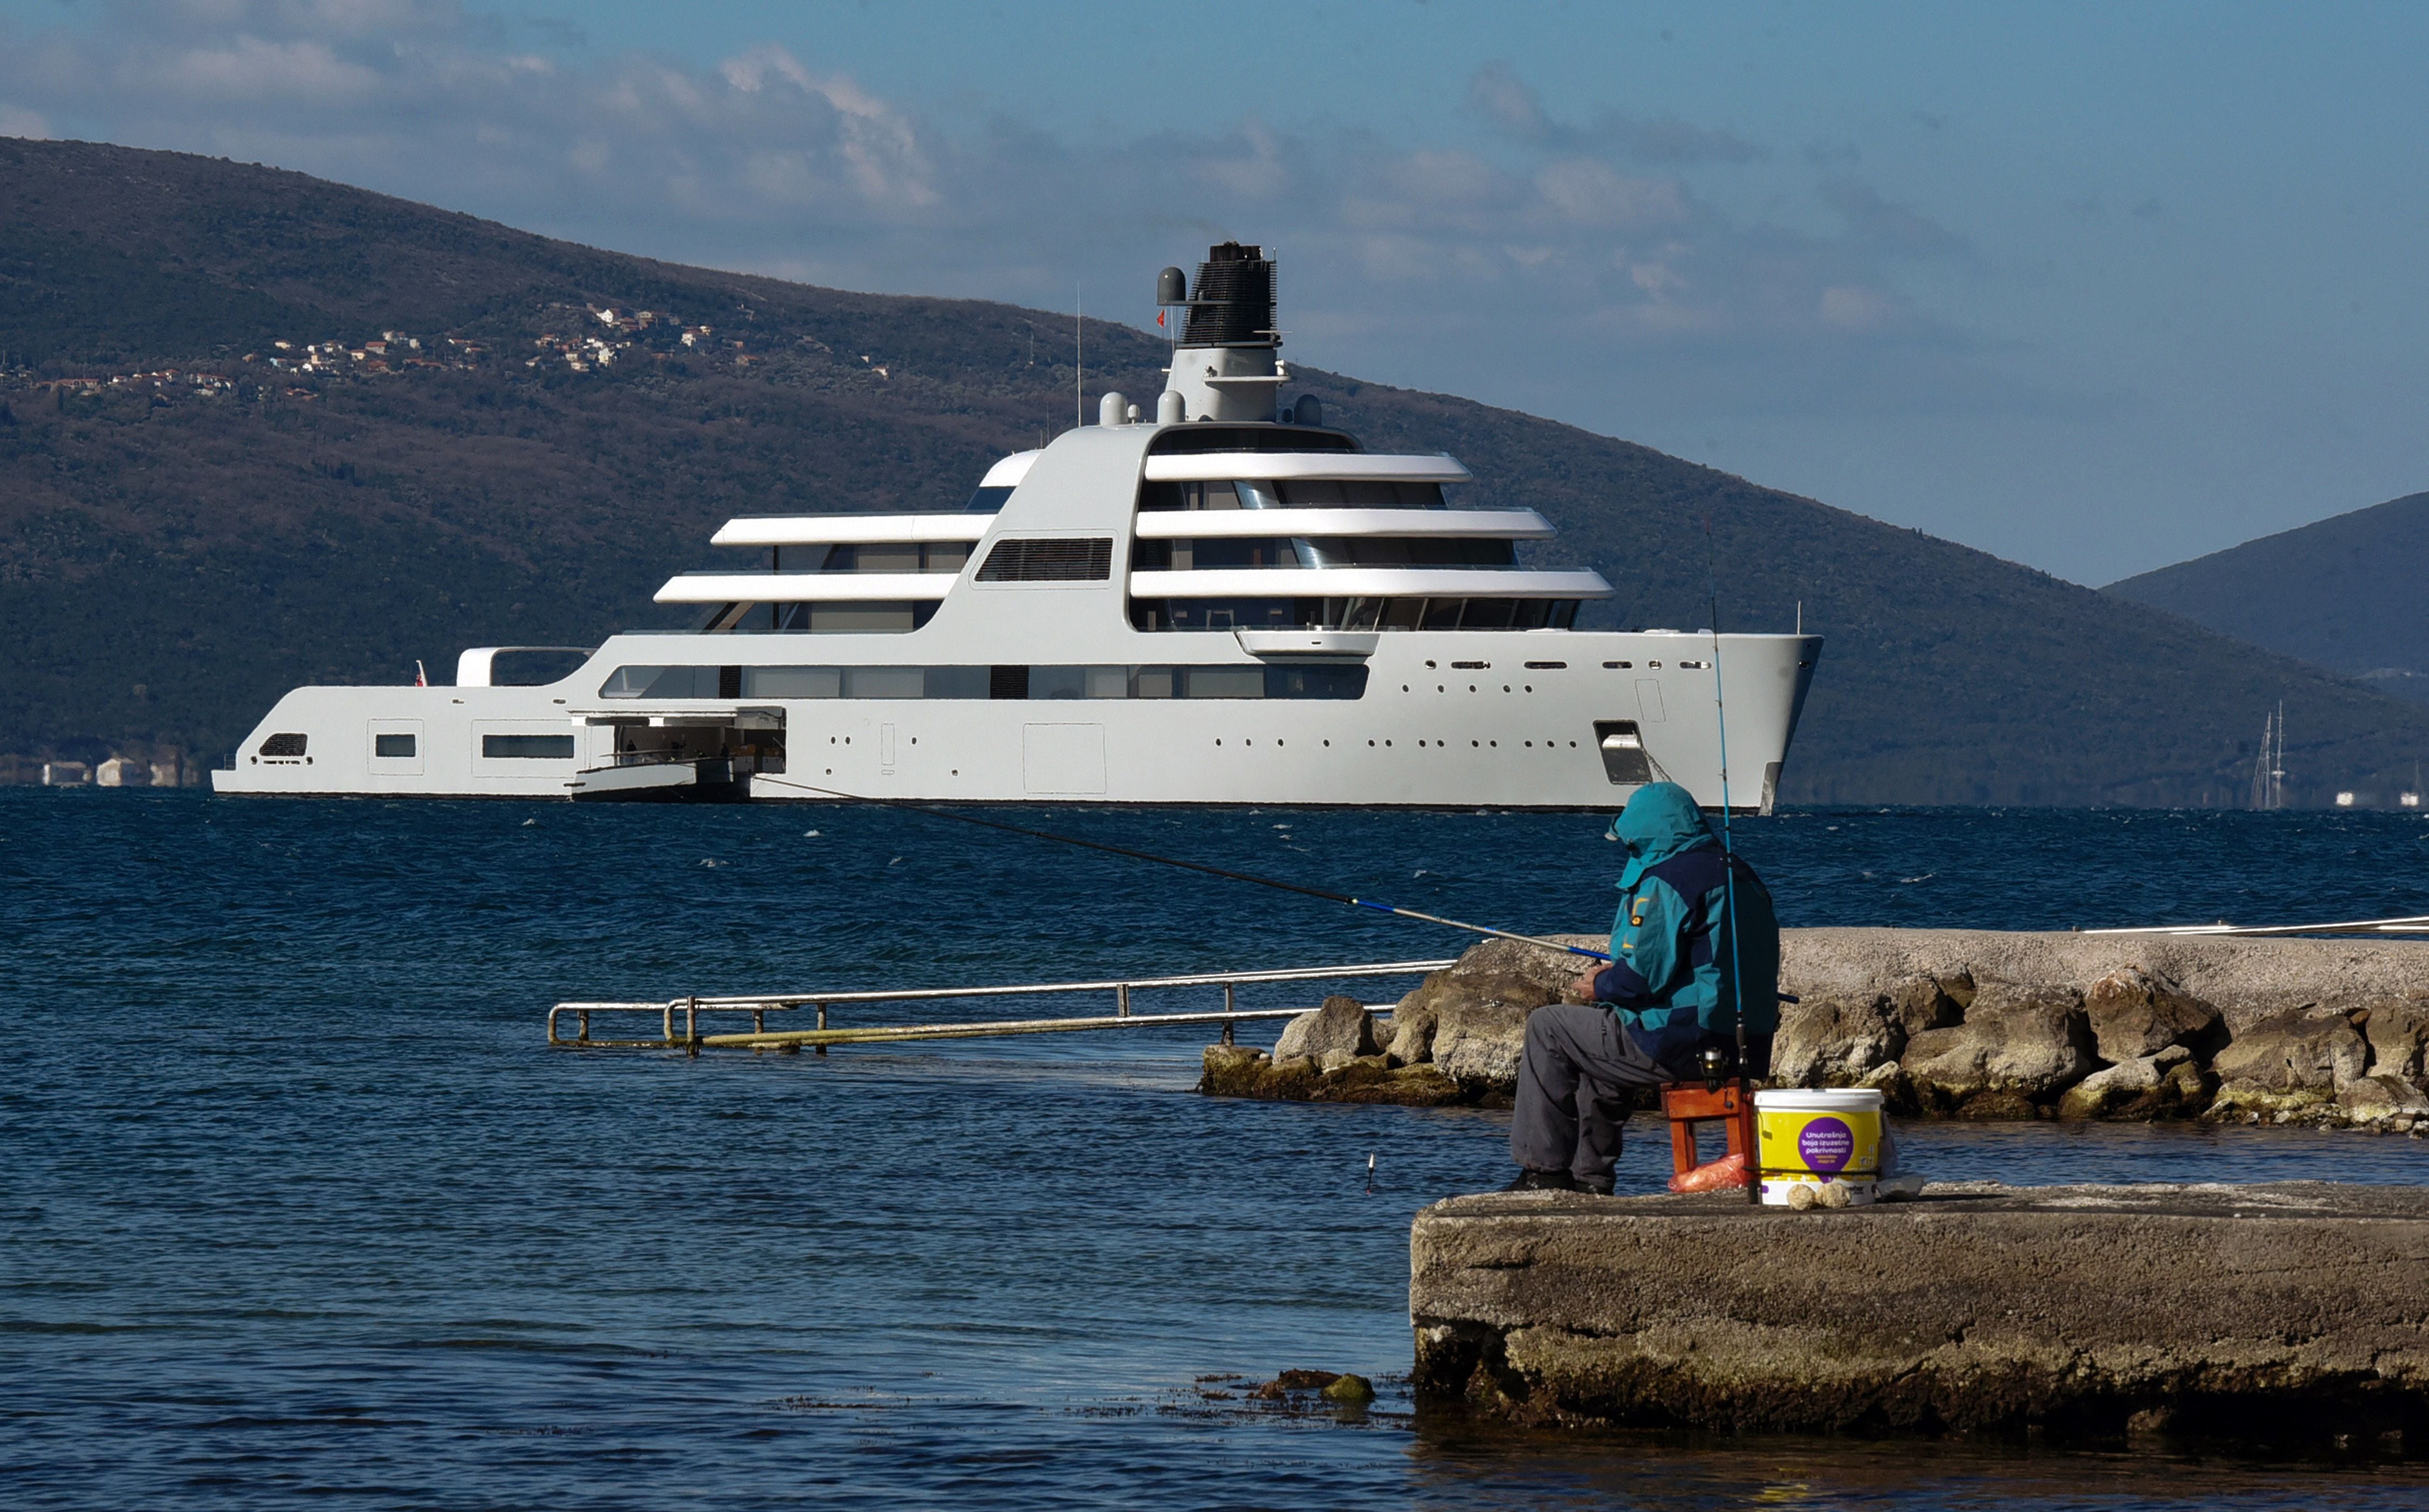 Foto de archivo del superyate Solaris, propiedad del oligarca ruso Roman Abramovich, que está bajo sanciones del Reino Unido, navega hacia el puerto deportivo de yates de lujo Porto Montenegro, cerca de la ciudad montenegrina de Tivat, en la costa del Adriático, el 12 de marzo de 2022. (Foto de SAVO PRELEVIC / AFP)